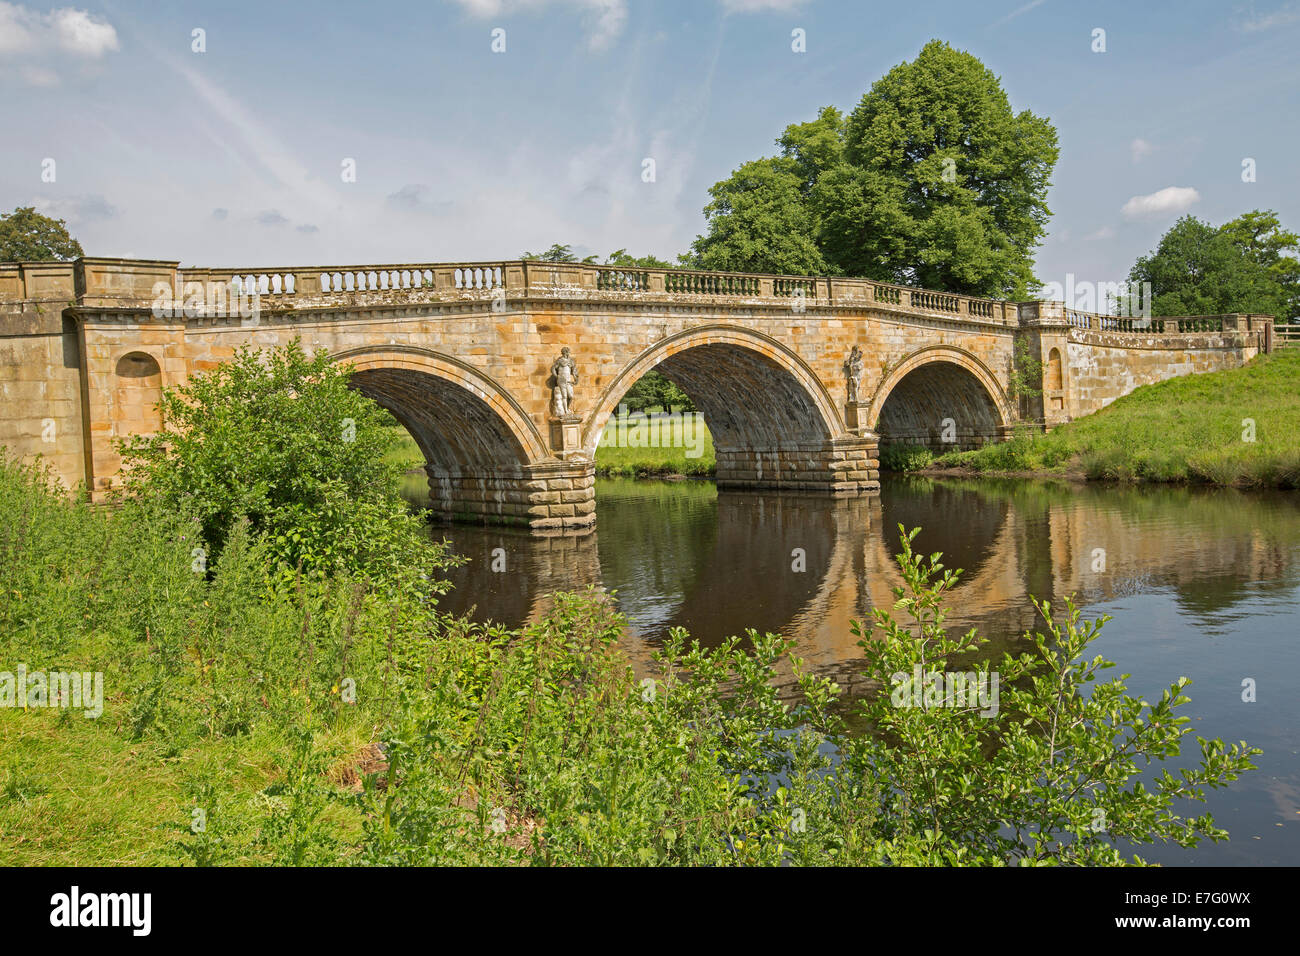 18ème siècle ornée de trois arches de grès pont sur la rivière Derwent, avec pont arbres et ciel bleu reflété dans l'eau calme Banque D'Images